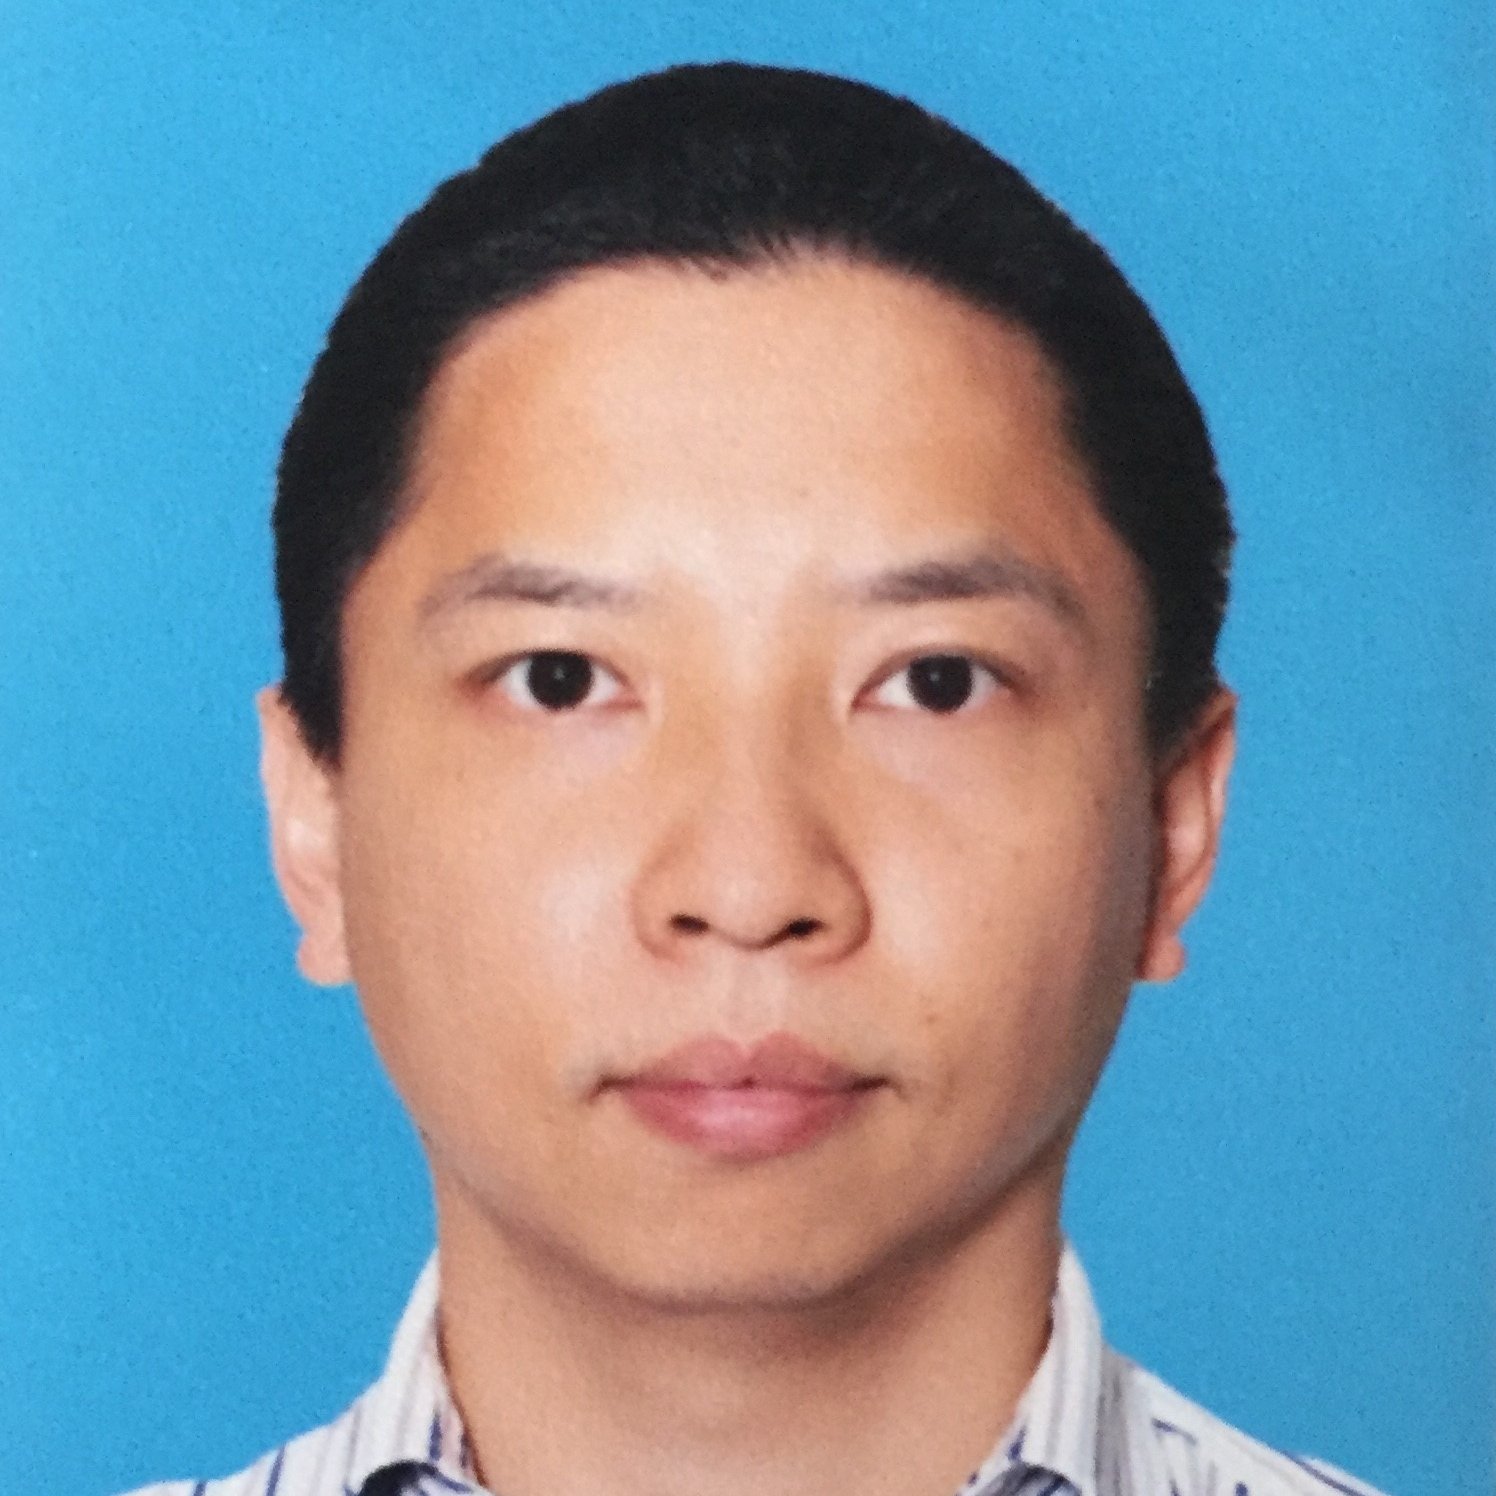 Dr Xuchun Li